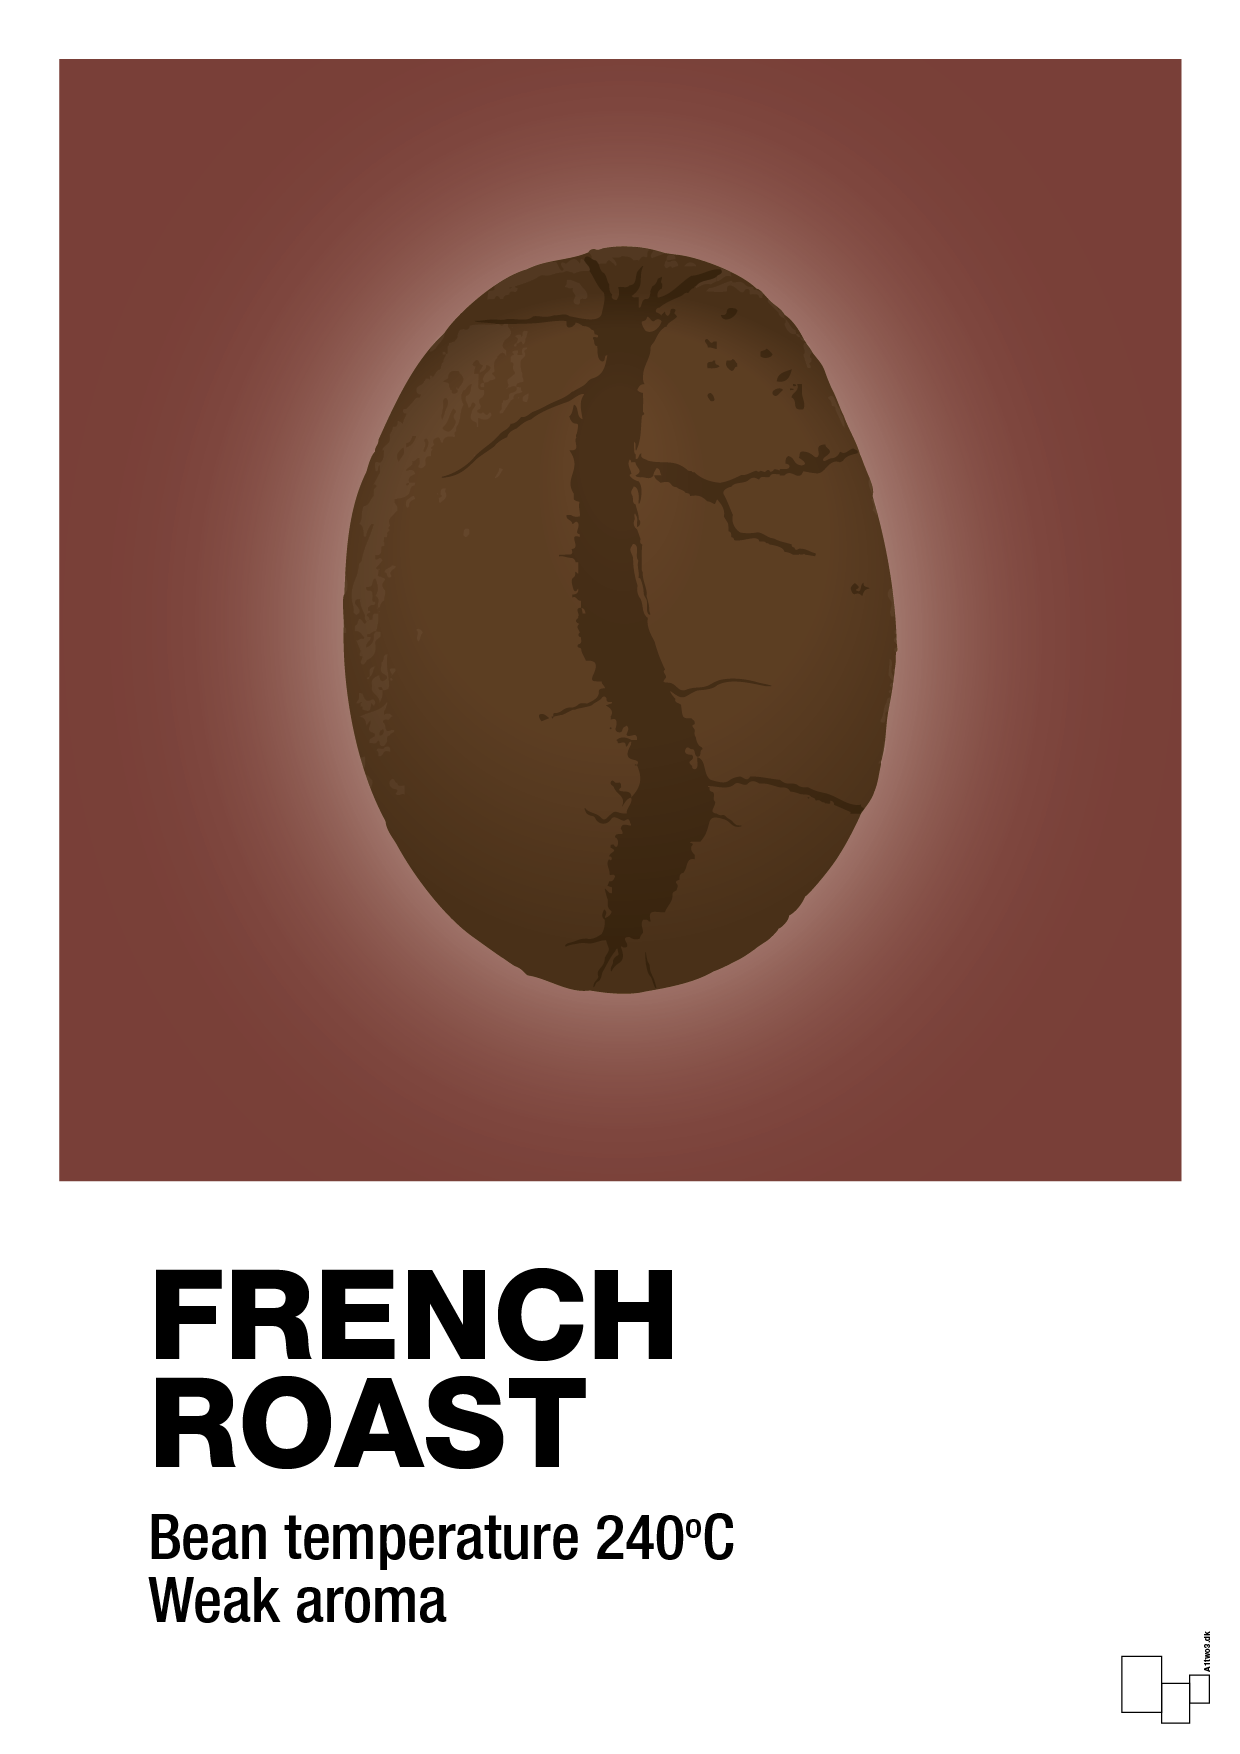 french roast - Plakat med Mad & Drikke i Red Pepper